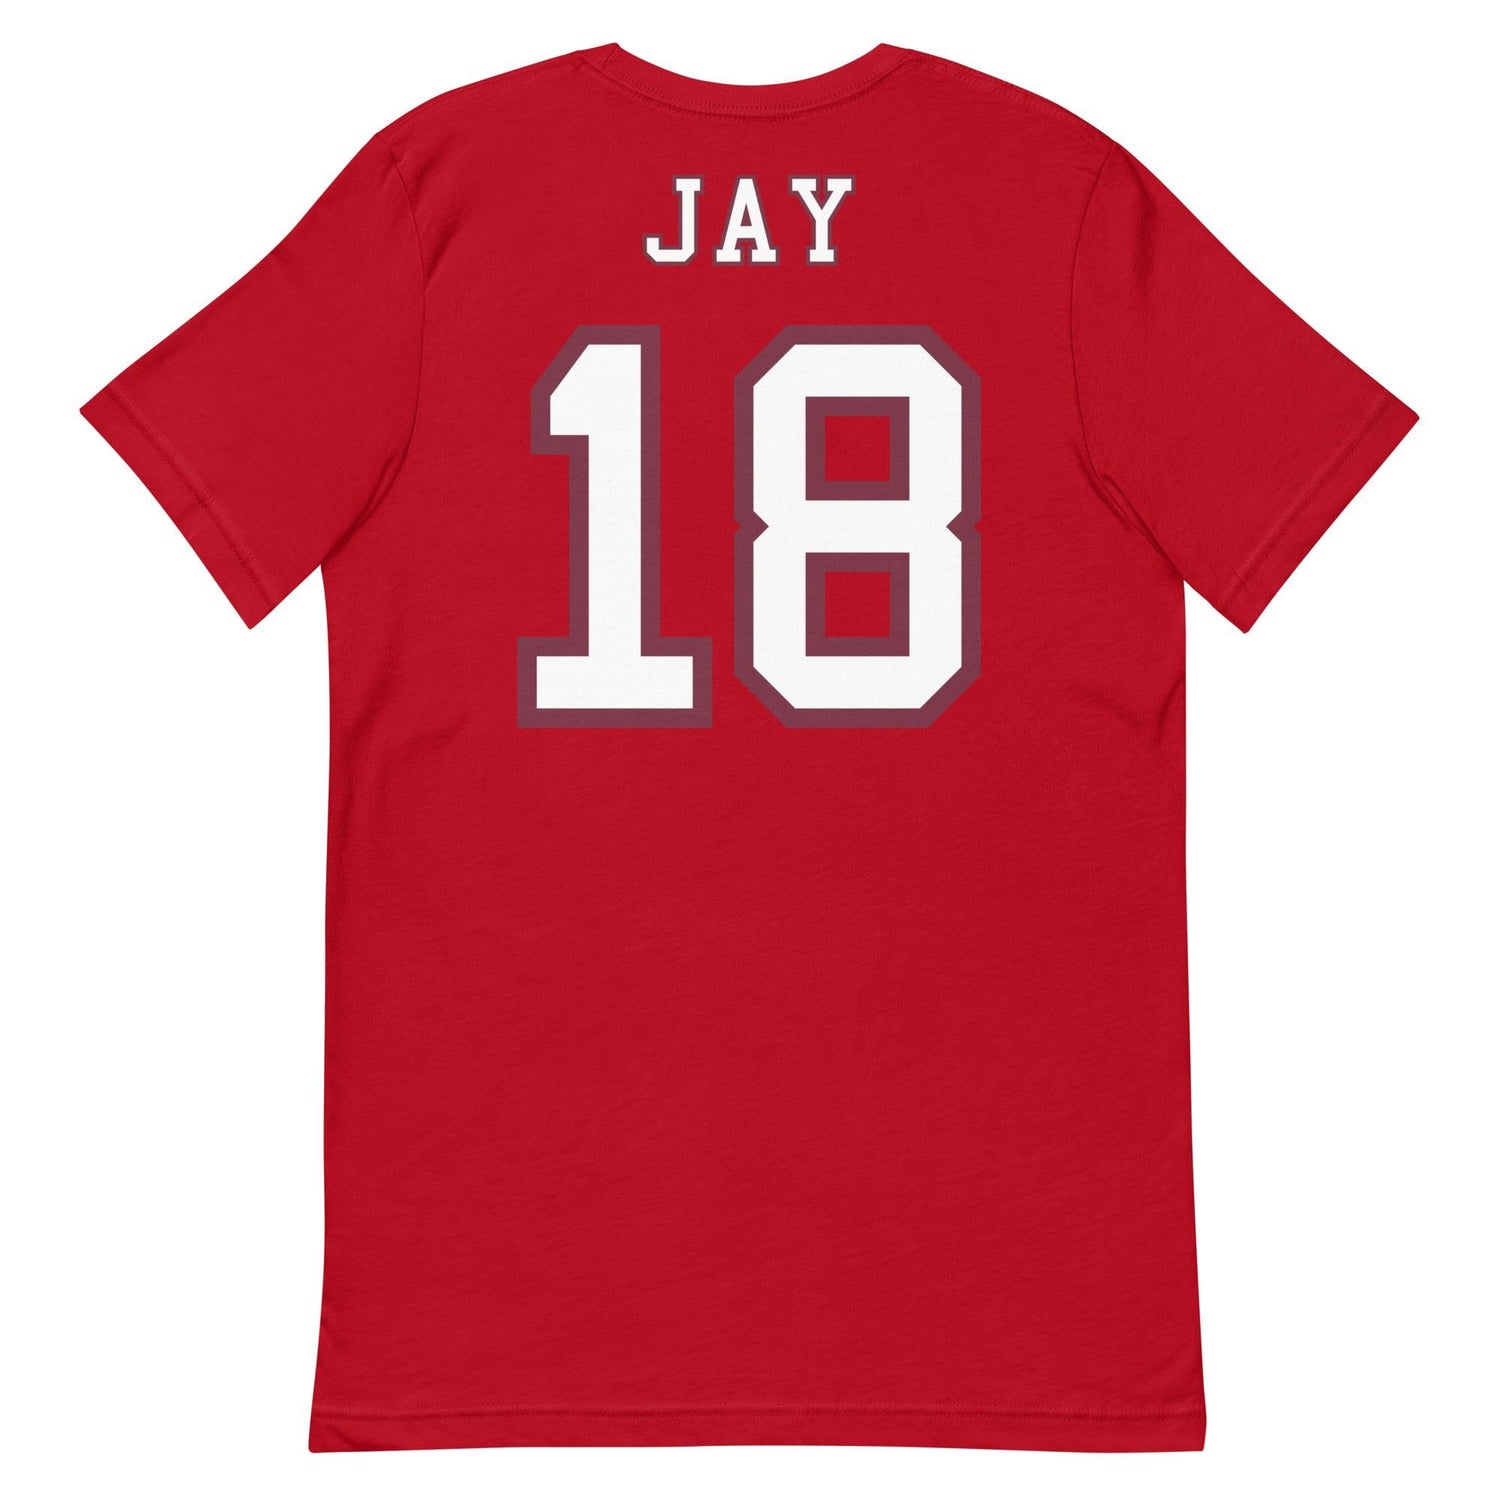 Travis Jay "Jersey" t-shirt - Fan Arch